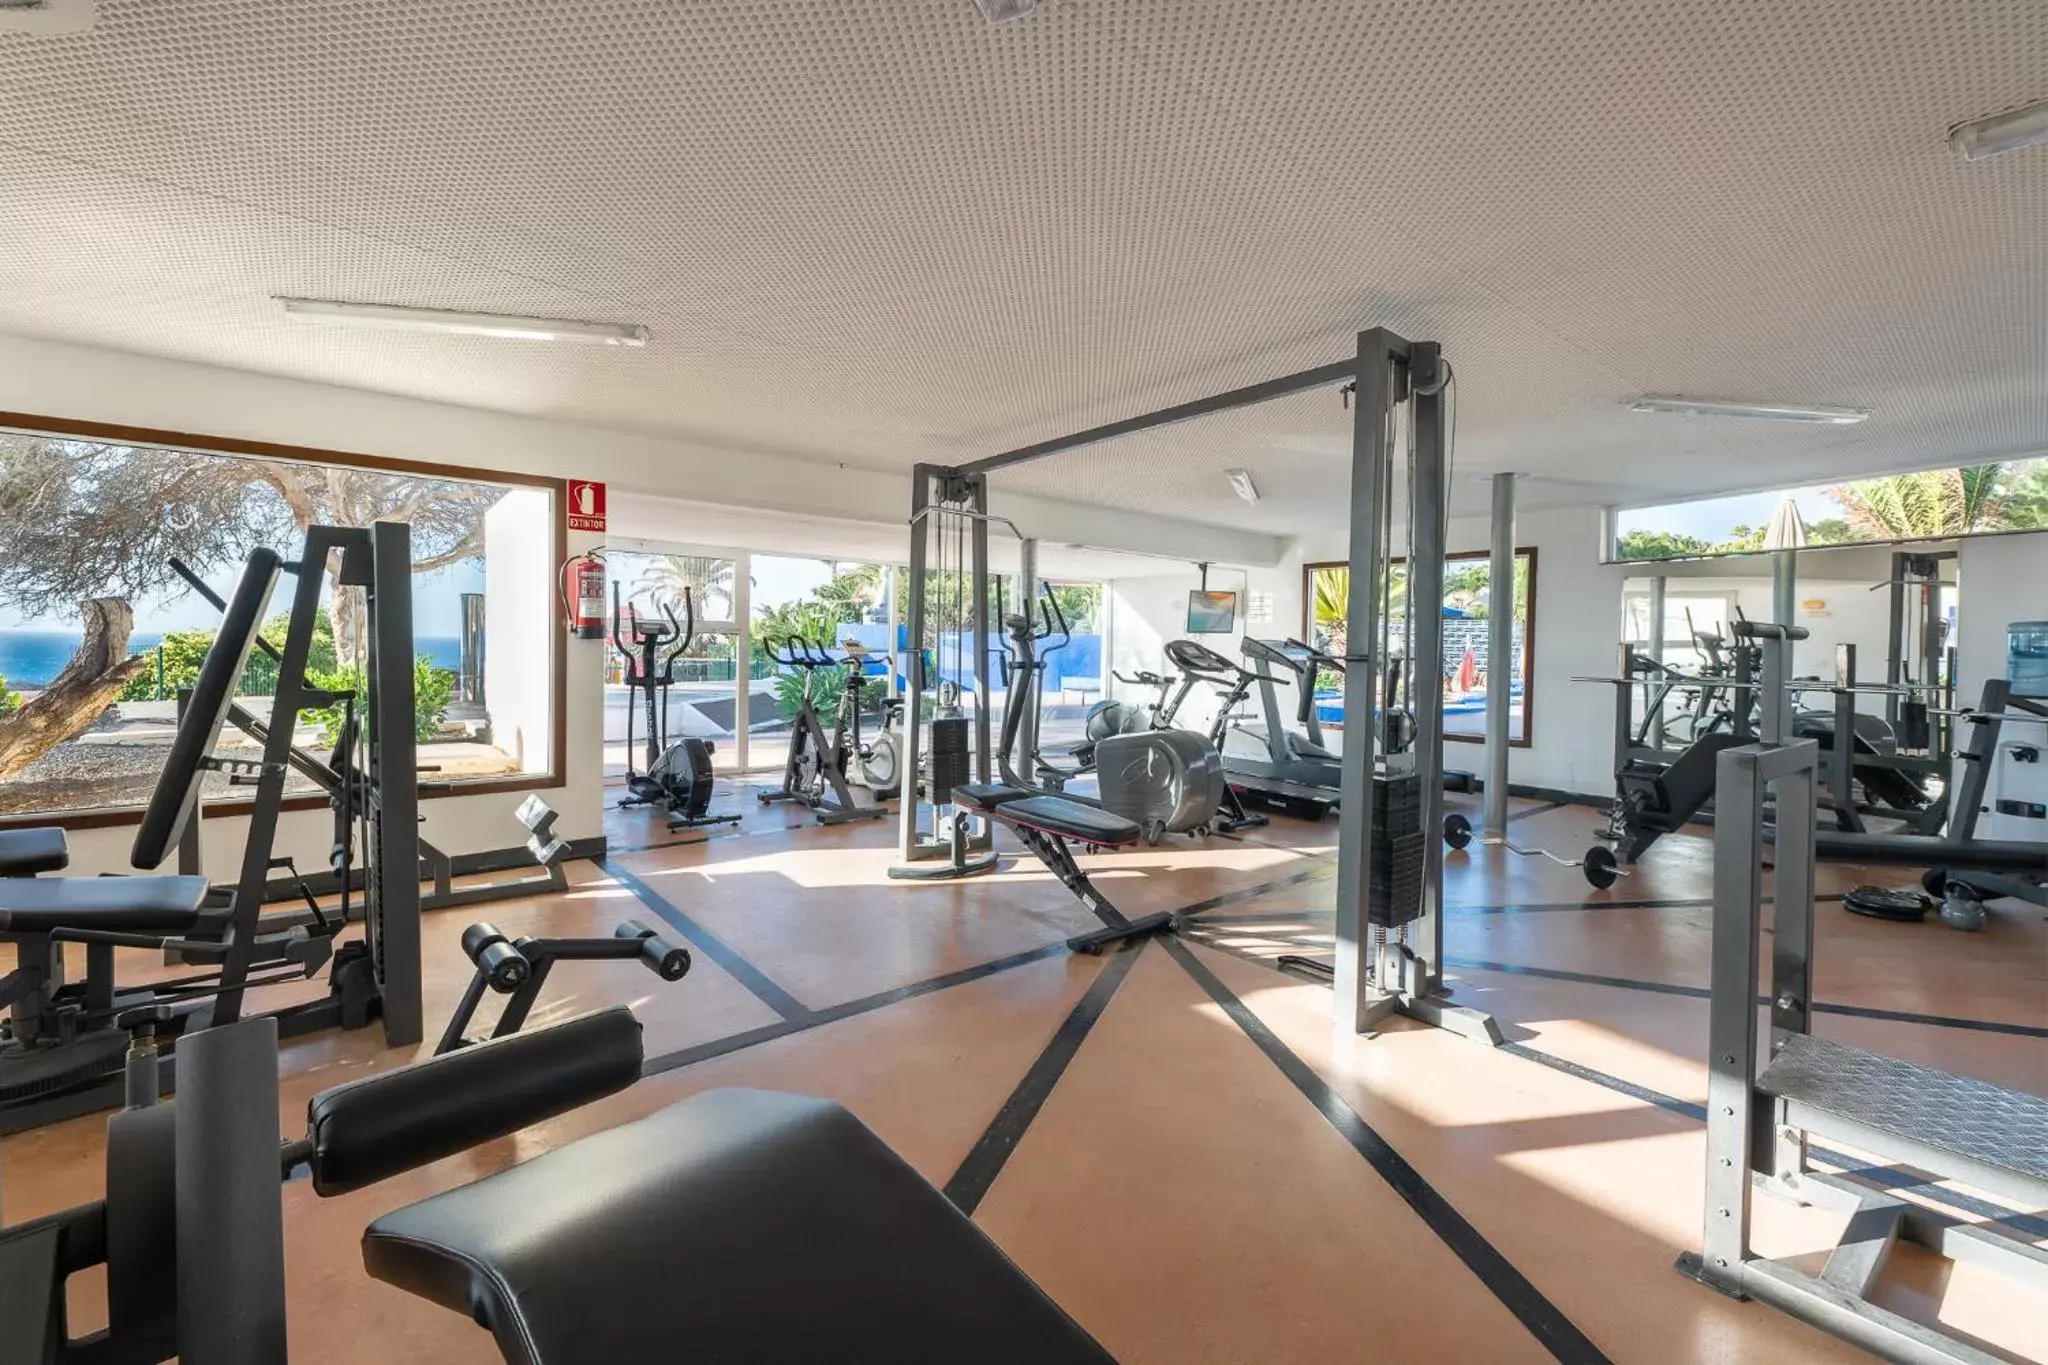 Fitness centre/facilities, Fitness Center/Facilities in Hotel LIVVO Risco del Gato Suites